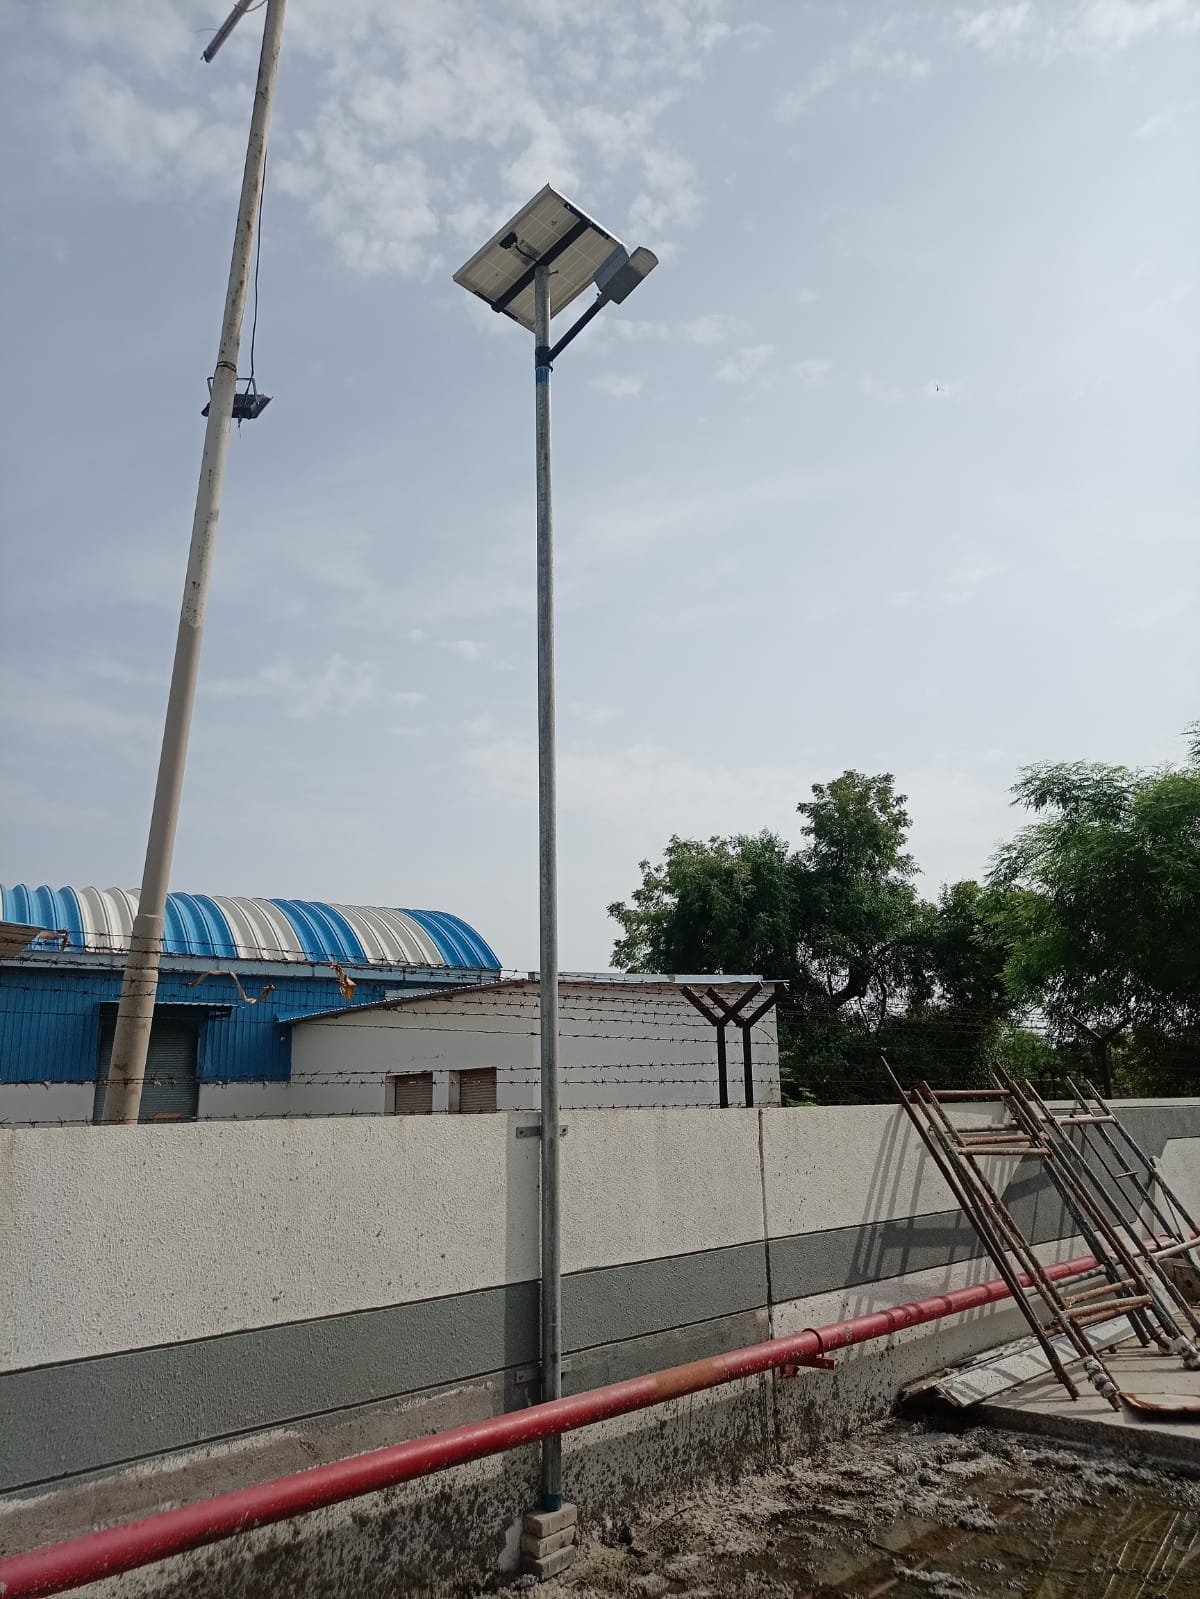 solar LED street light  36 Watt